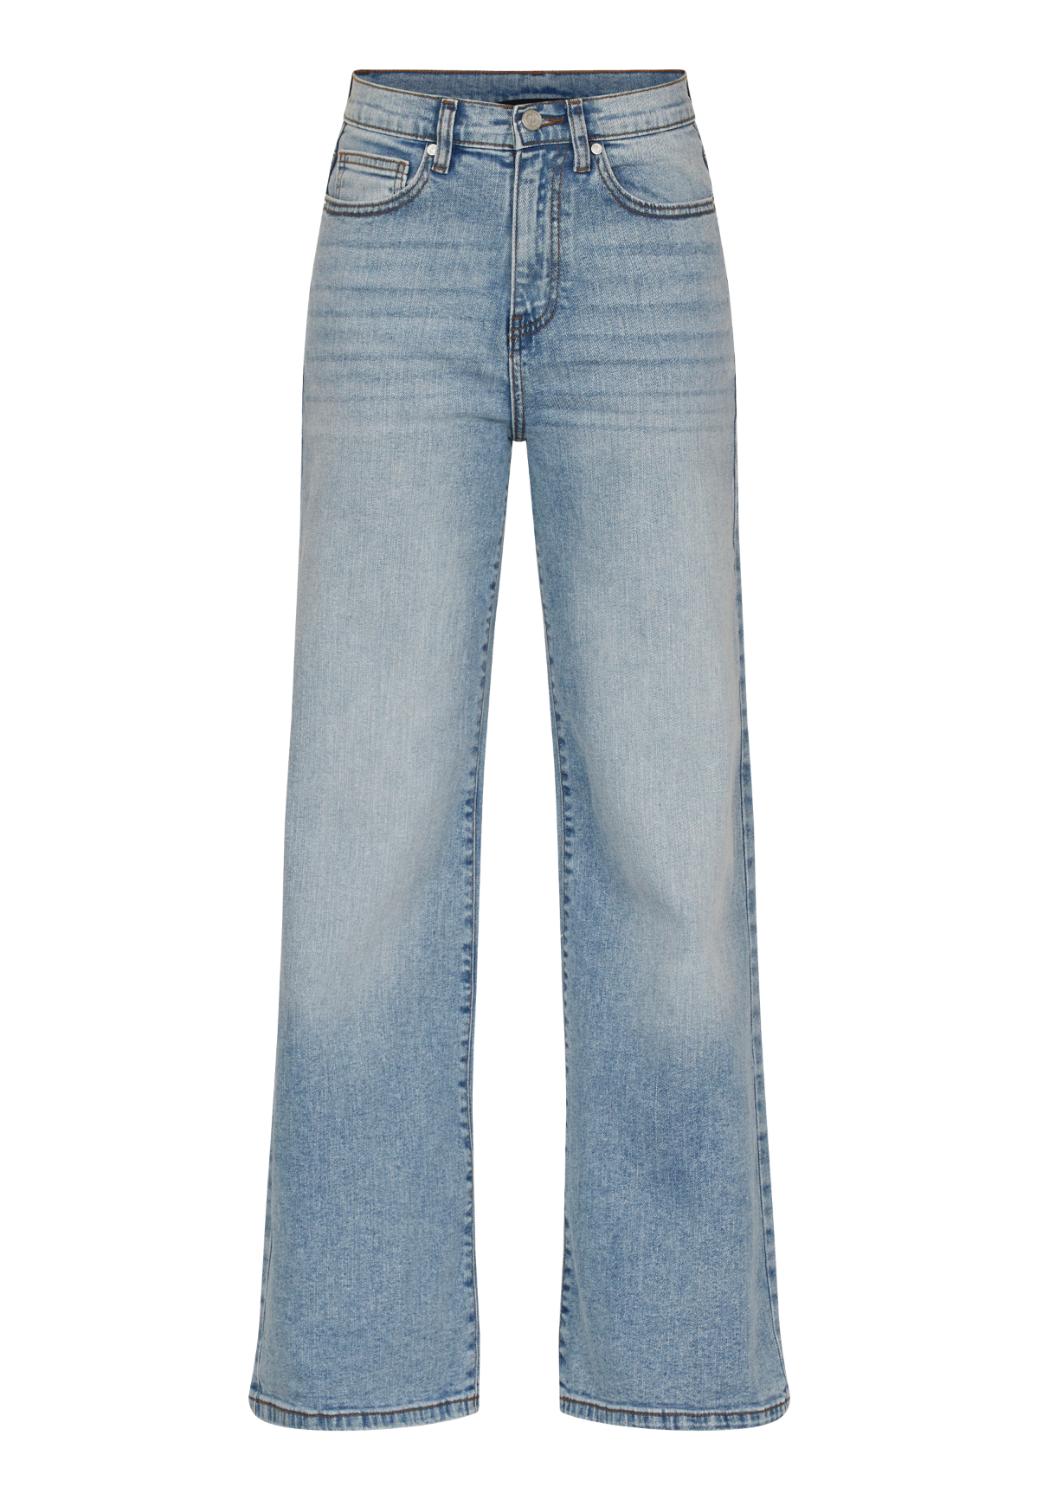 Jeans OWI-W.JE9 light blue